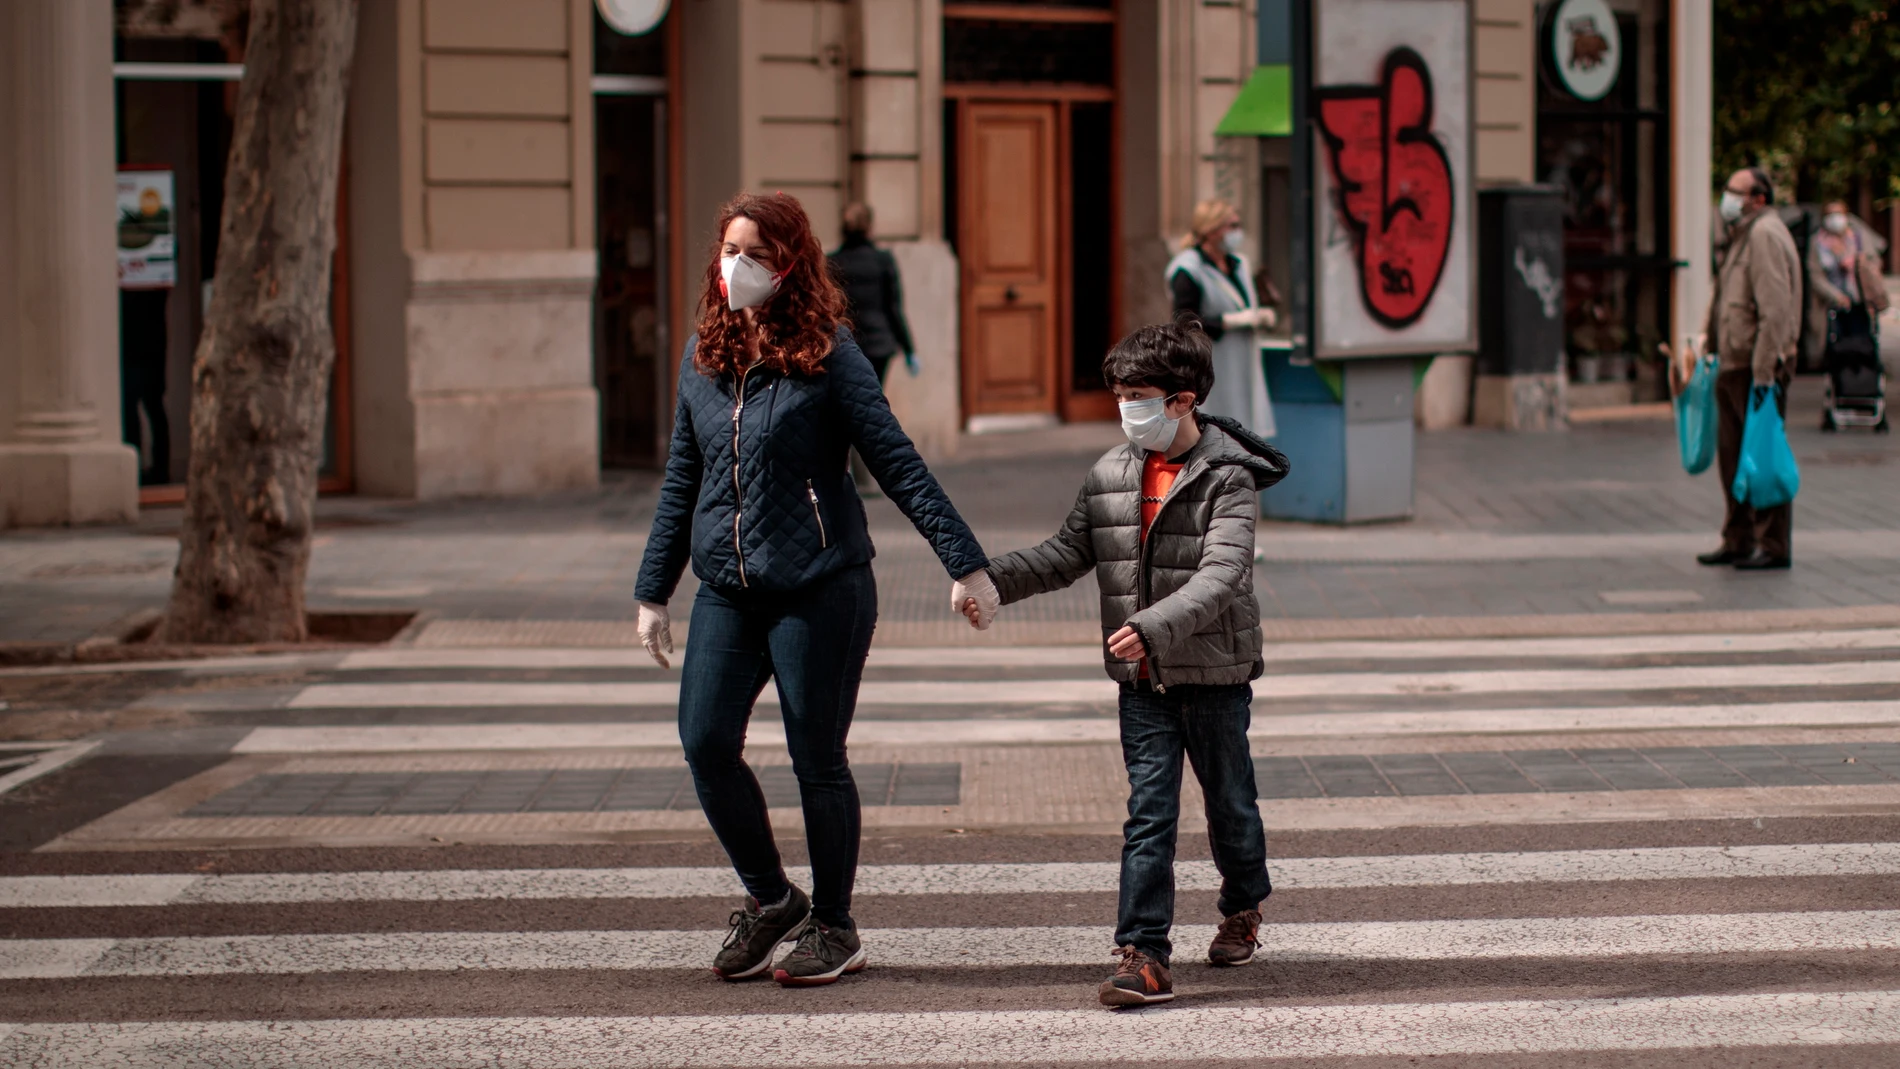  Una mujer acompañada de un niño cruza una calle en Valencia